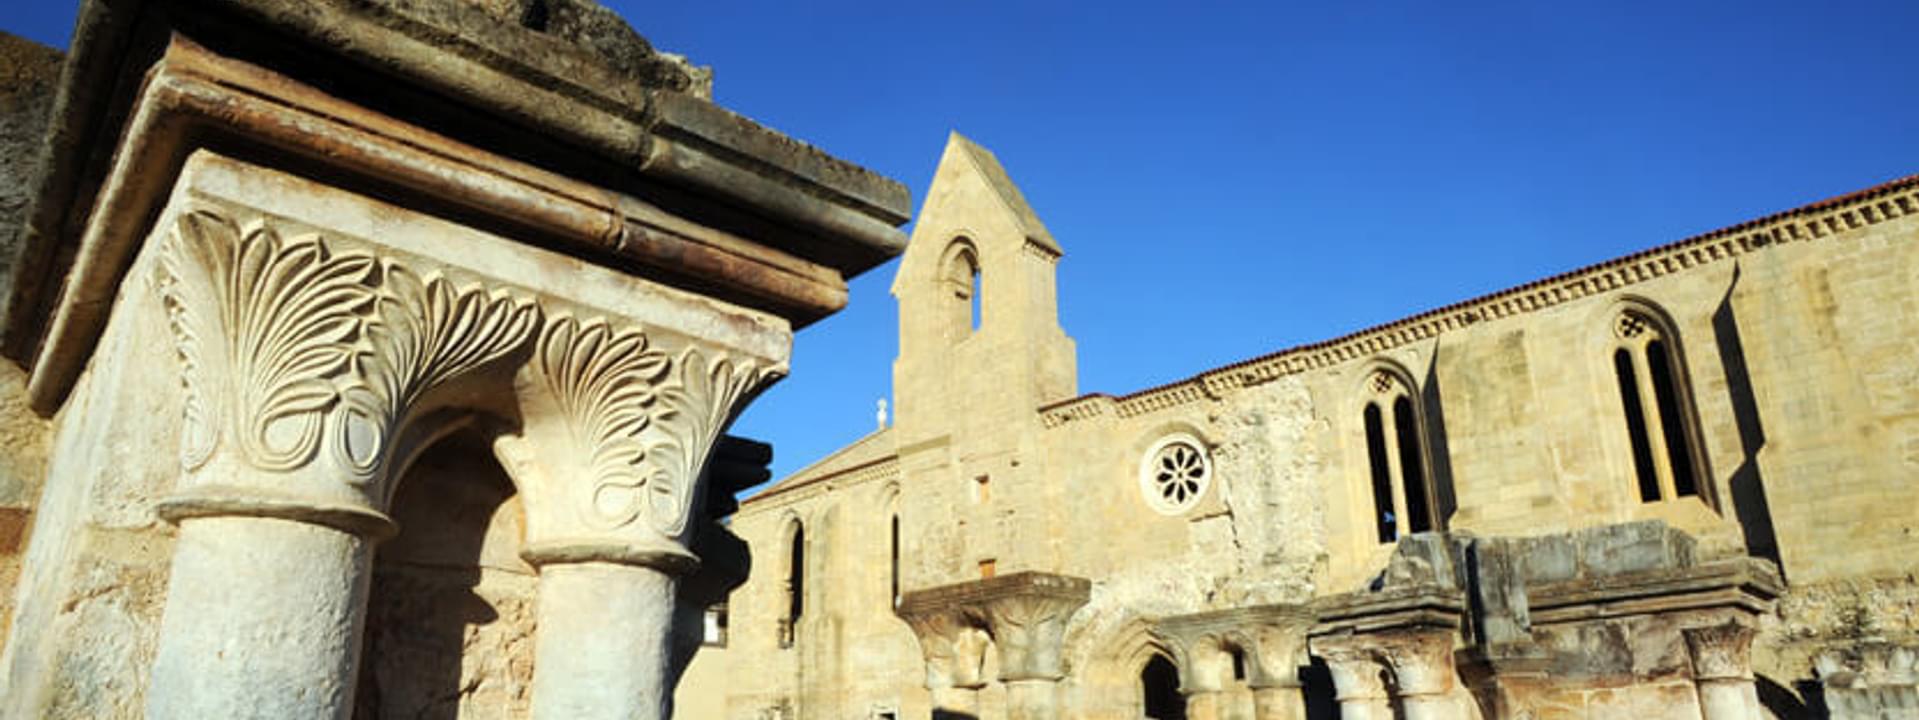 Mosteiro de Santa Clara a Velha